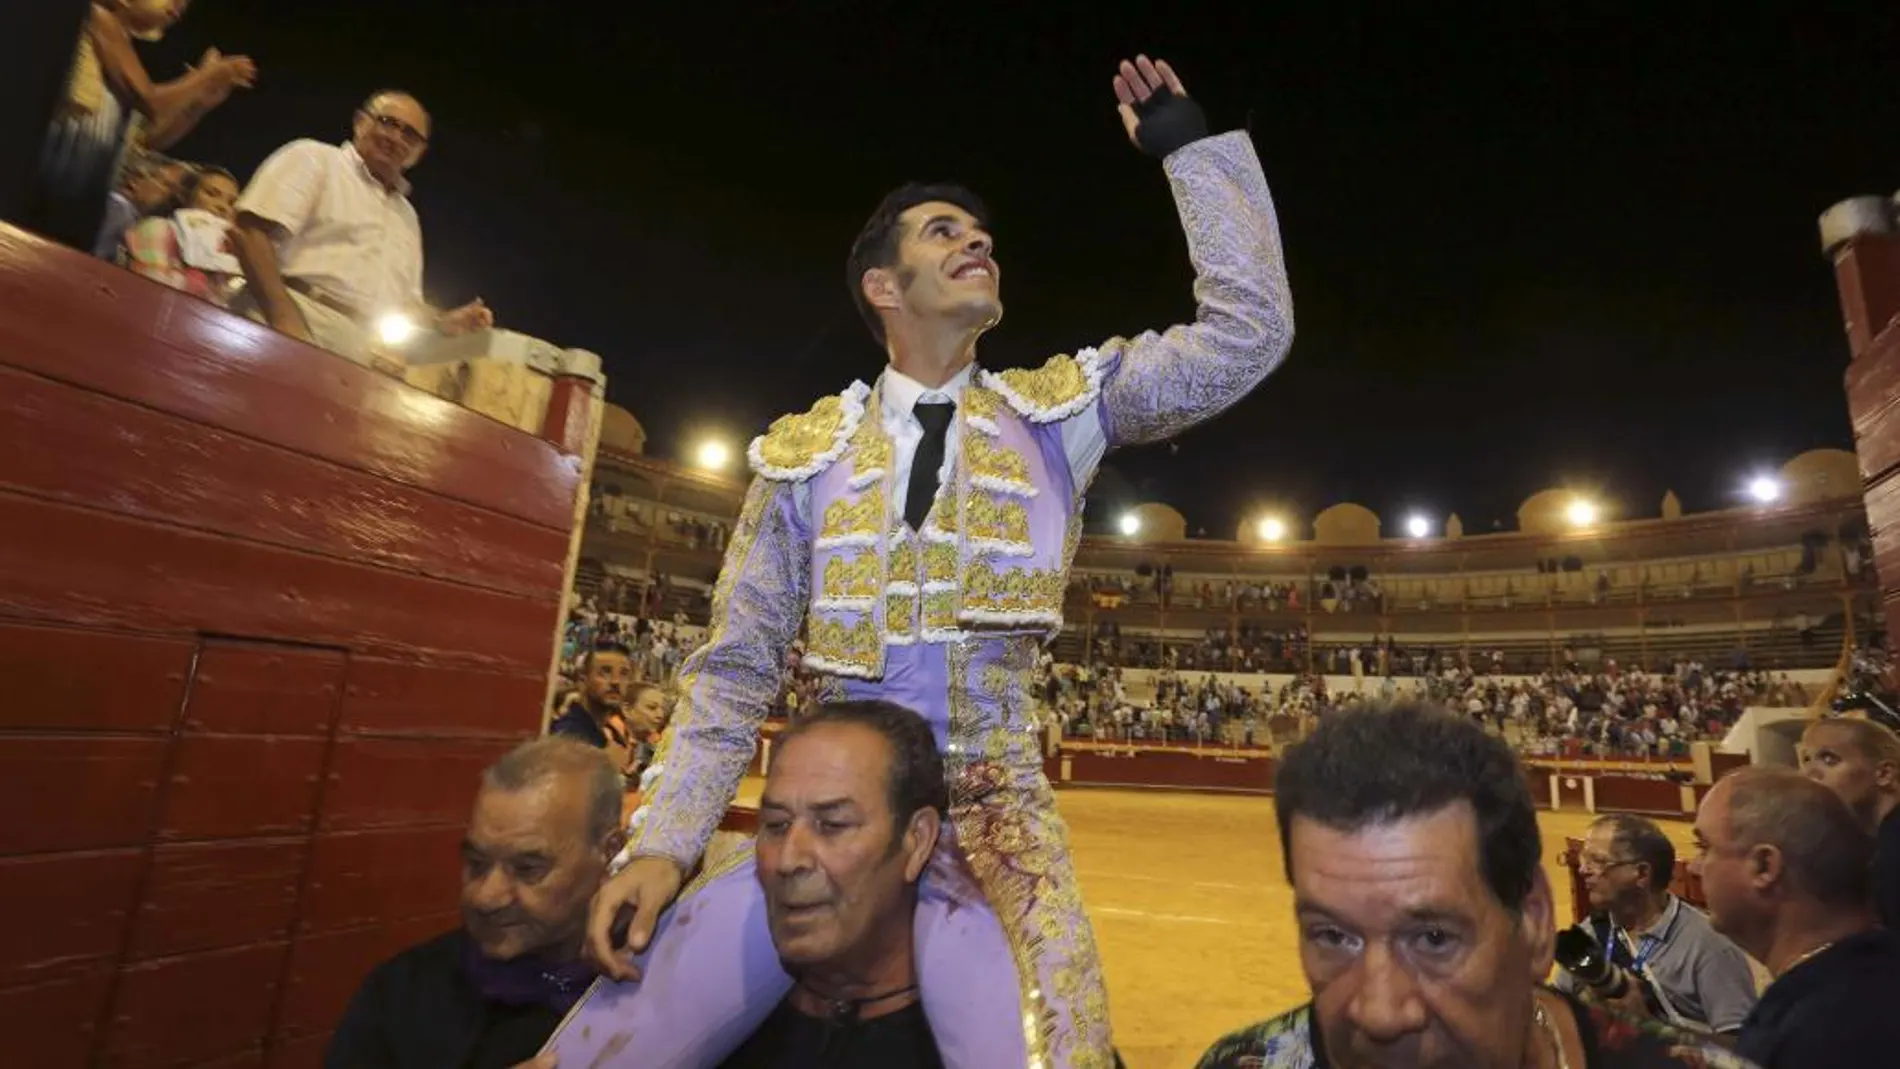 El diestro Alejandro Talavante sale a hombros por la puerta grande tras el festejo taurino de la Feria de la Virgen del Mar celebrado en Almería.